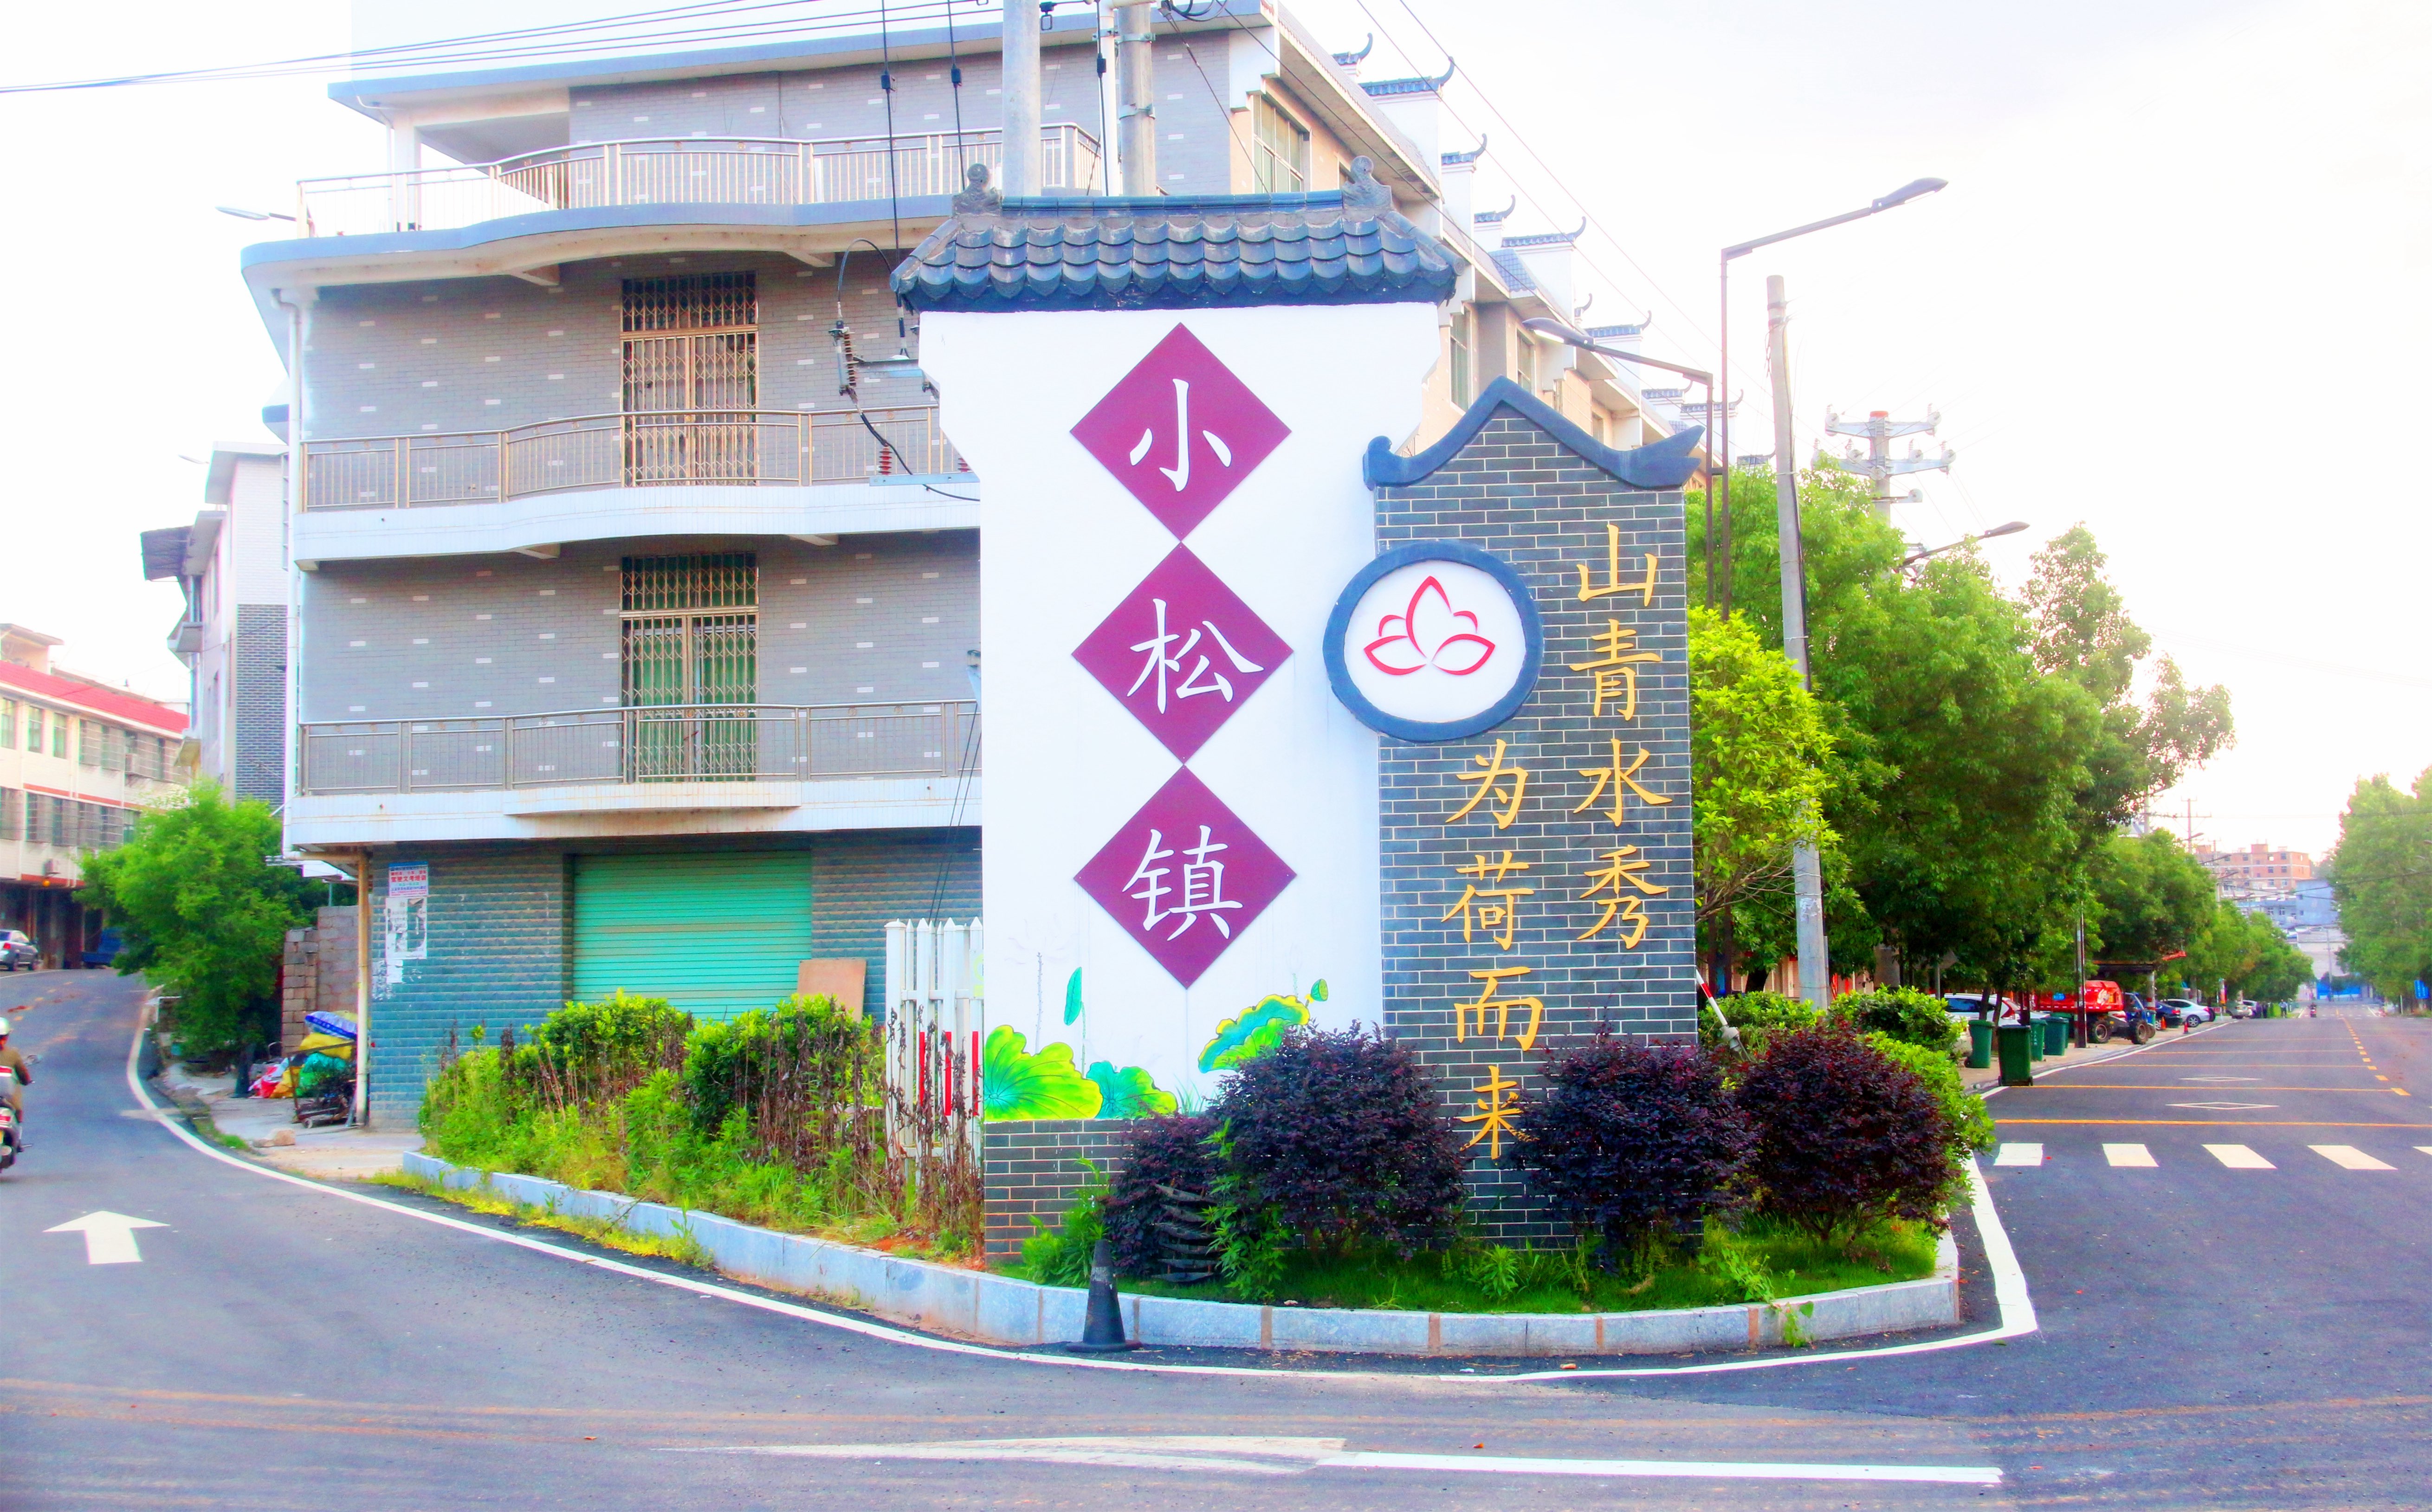 小松镇隶属江西省赣州市石城县,素有天然氧吧之称,2013年被评为省级